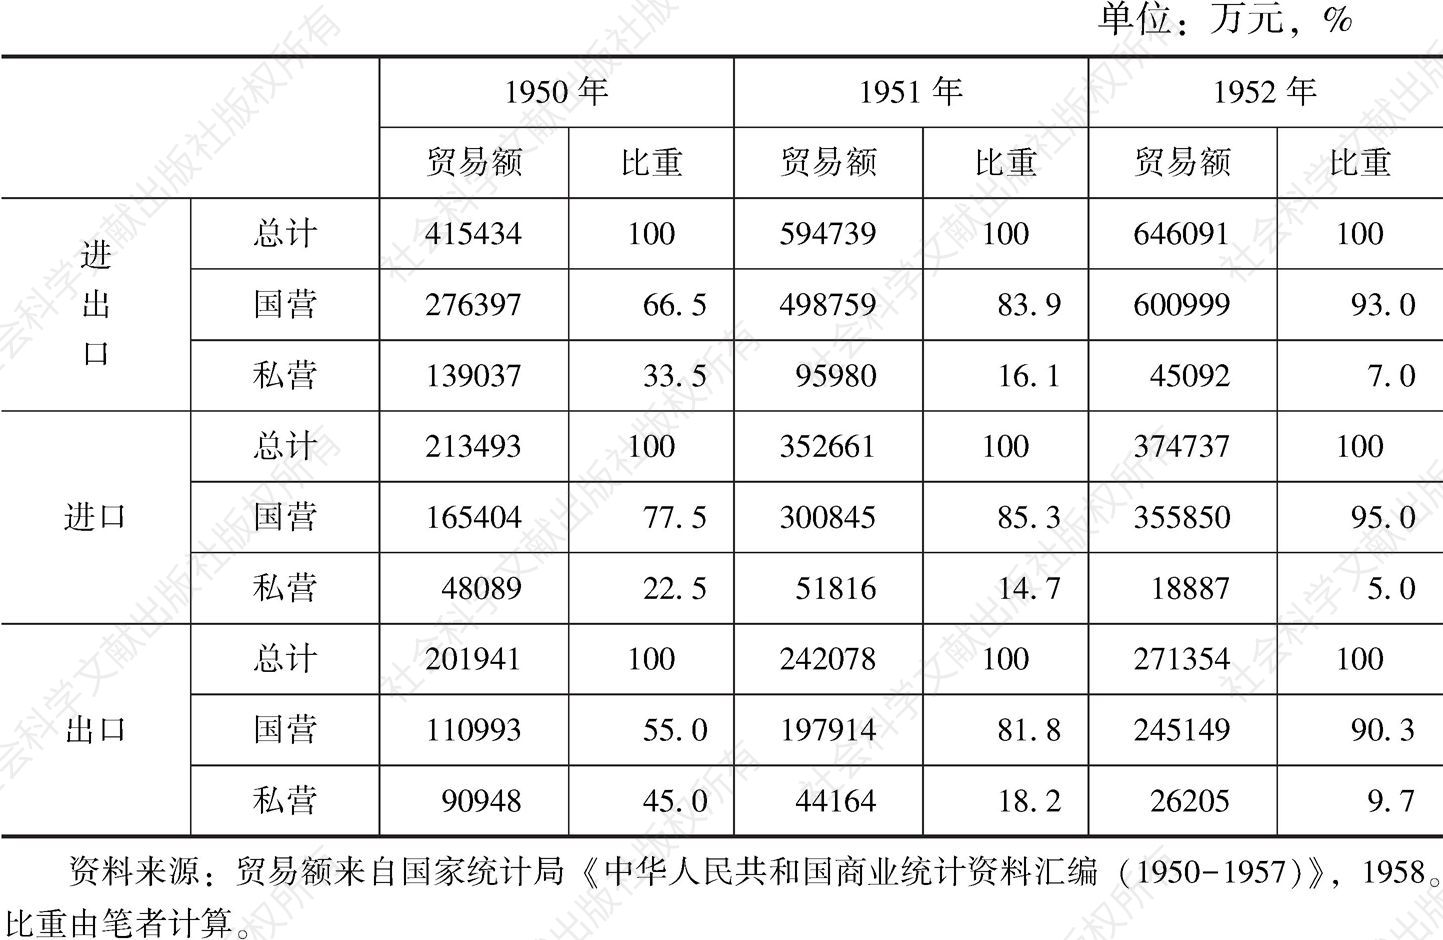 表1.7 1950～1952年中国进出口贸易经营实体变化